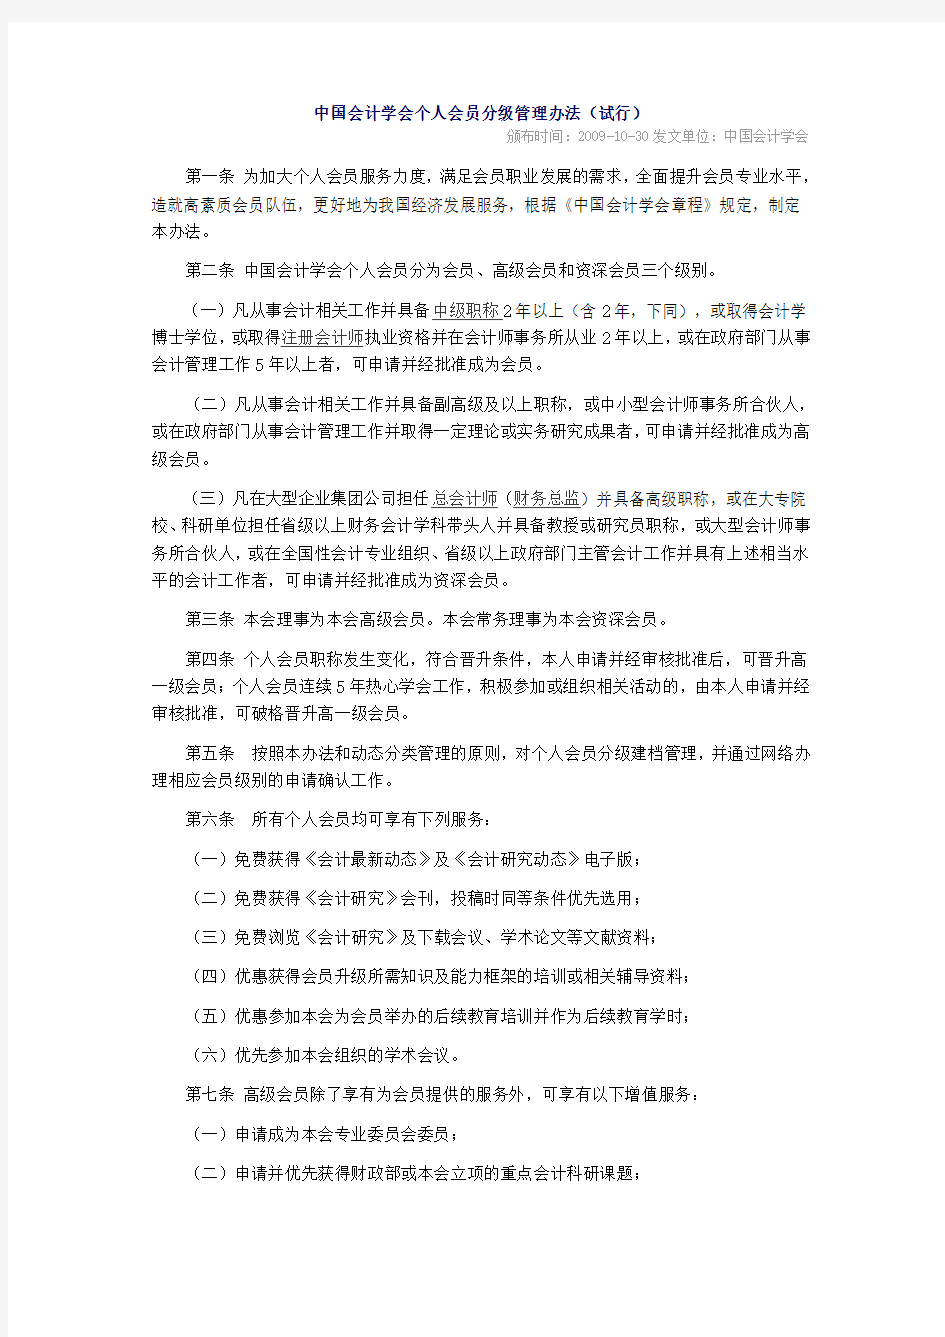 中国会计学会个人会员分级管理办法(试行)